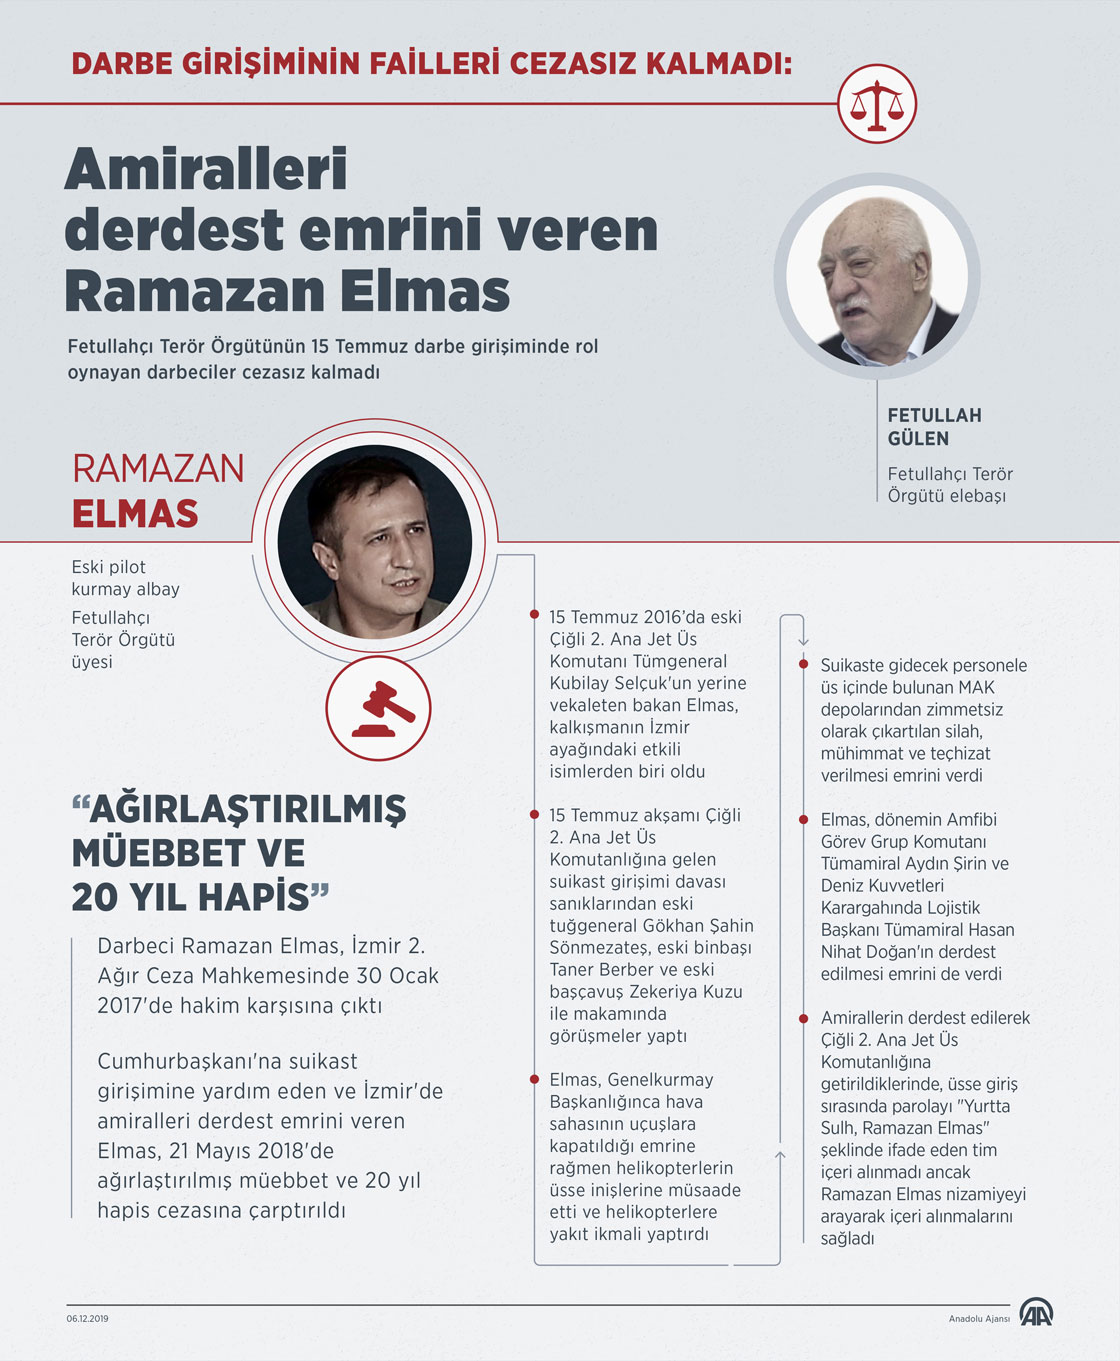 Darbe girişiminin failleri cezasız kalmadı: Amiralleri derdest emrini veren Ramazan Elmas